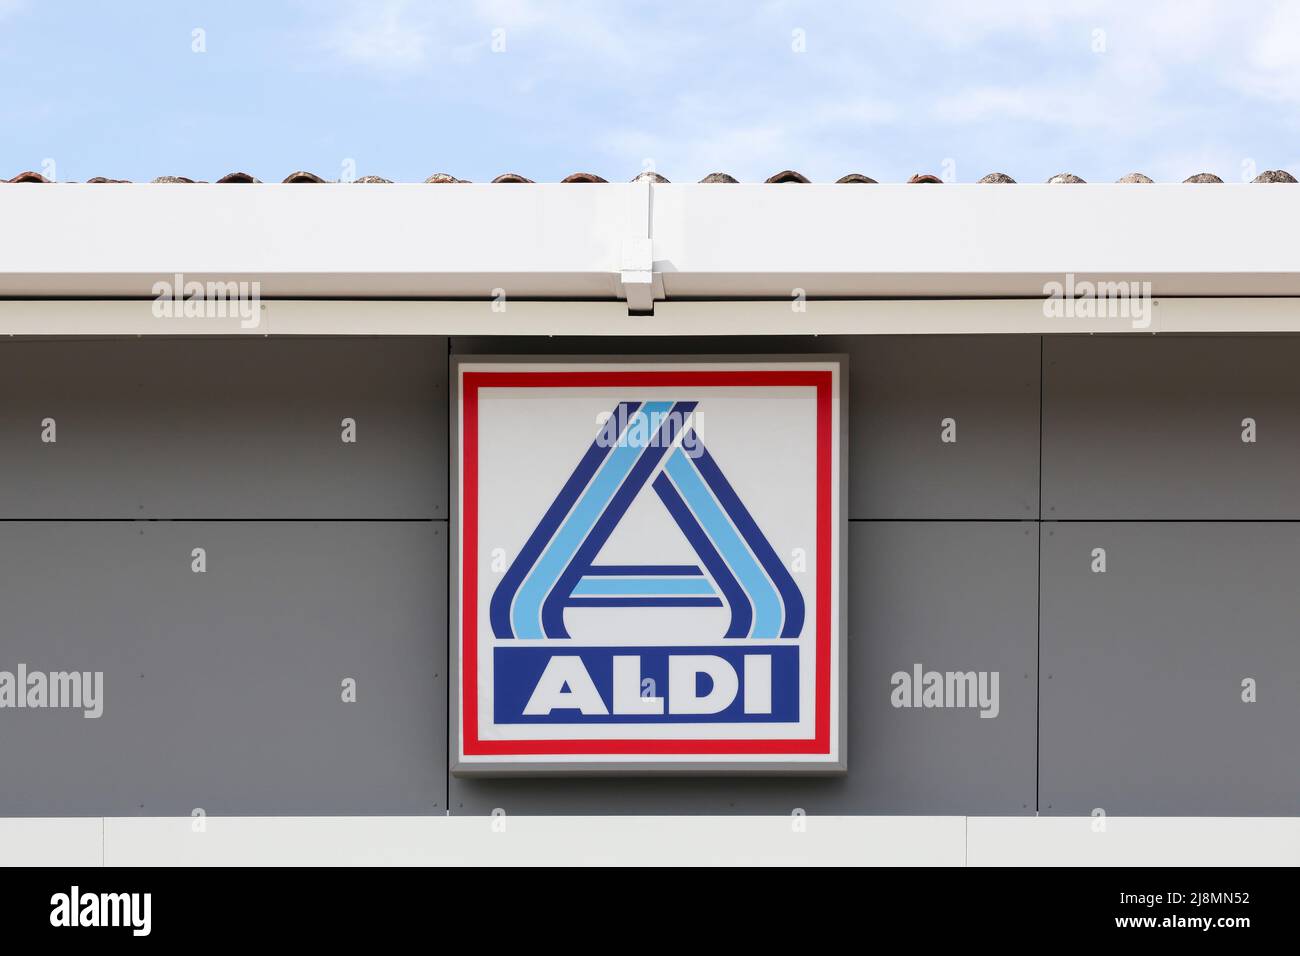 Anse, Frankreich - 23. Mai 2021: Aldi-Logo an der Wand. Aldi ist eine weltweit führende Discounter-Supermarktkette mit über 10 000 Geschäften in 18 Ländern Stockfoto